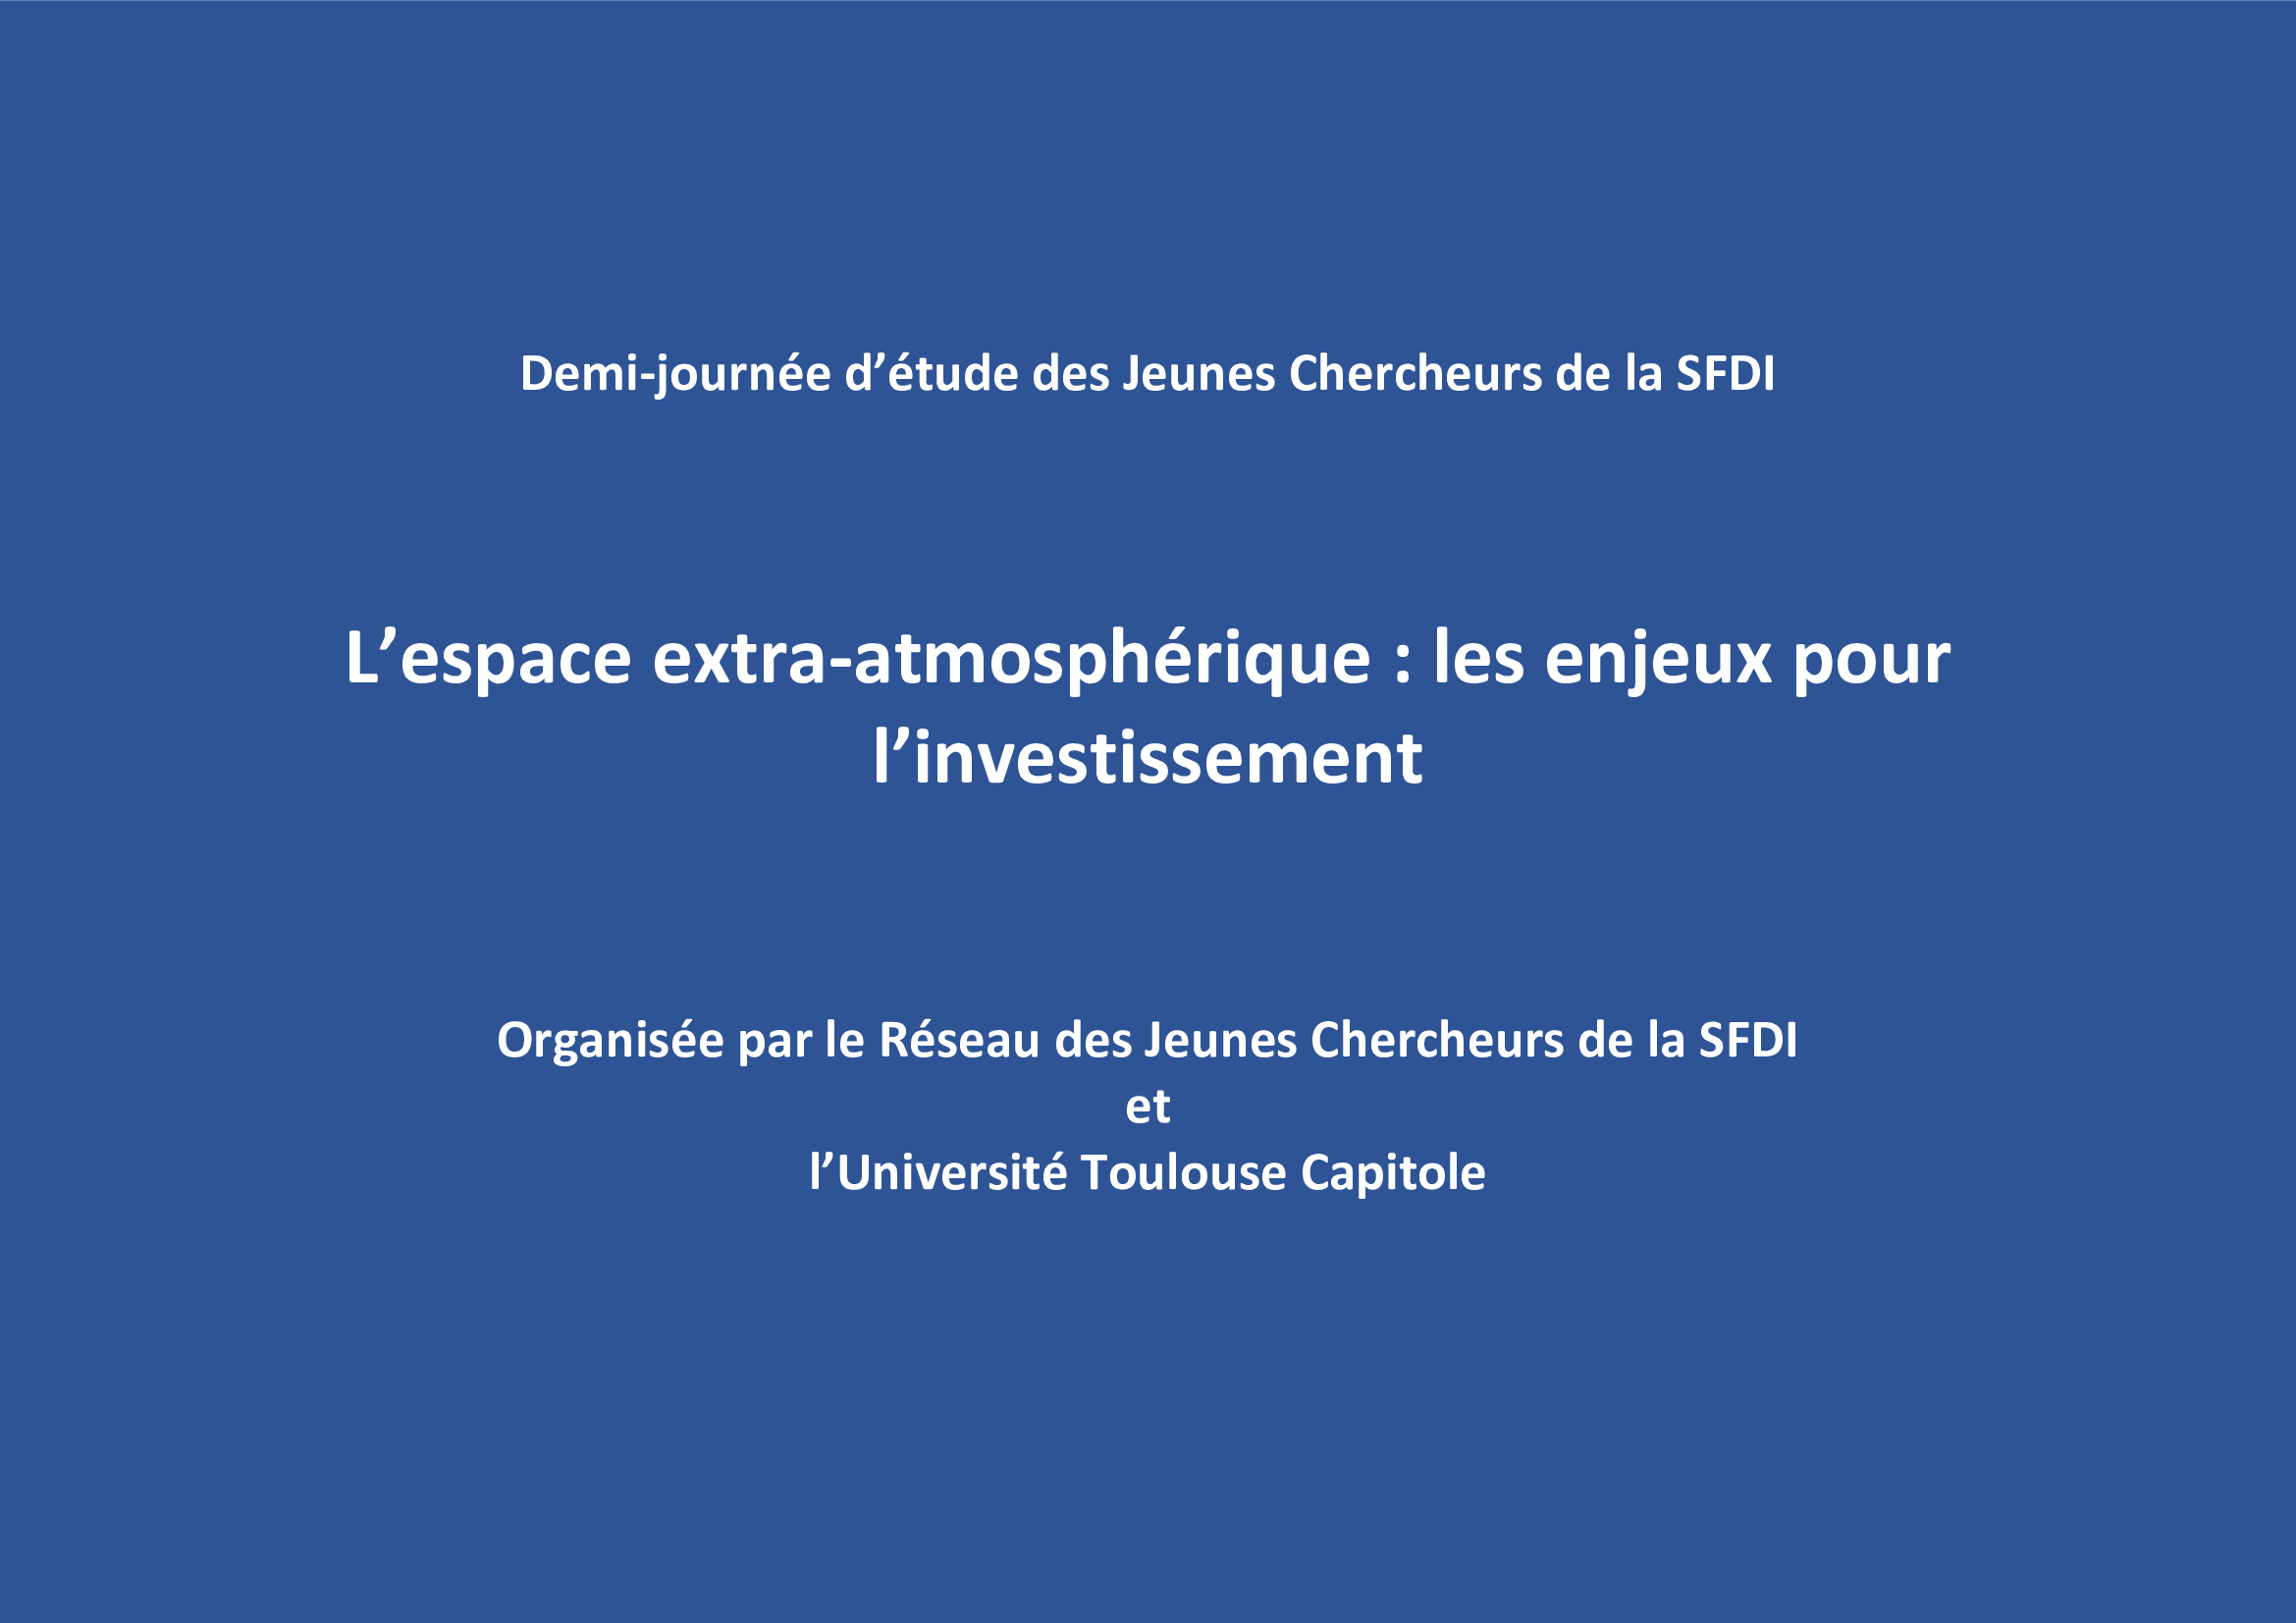 "L'exploitation des ressources de l'espace extra-atmosphérique à des fins commerciales : une activité couverte par le droit international des investissements ?", par A. Iglesias